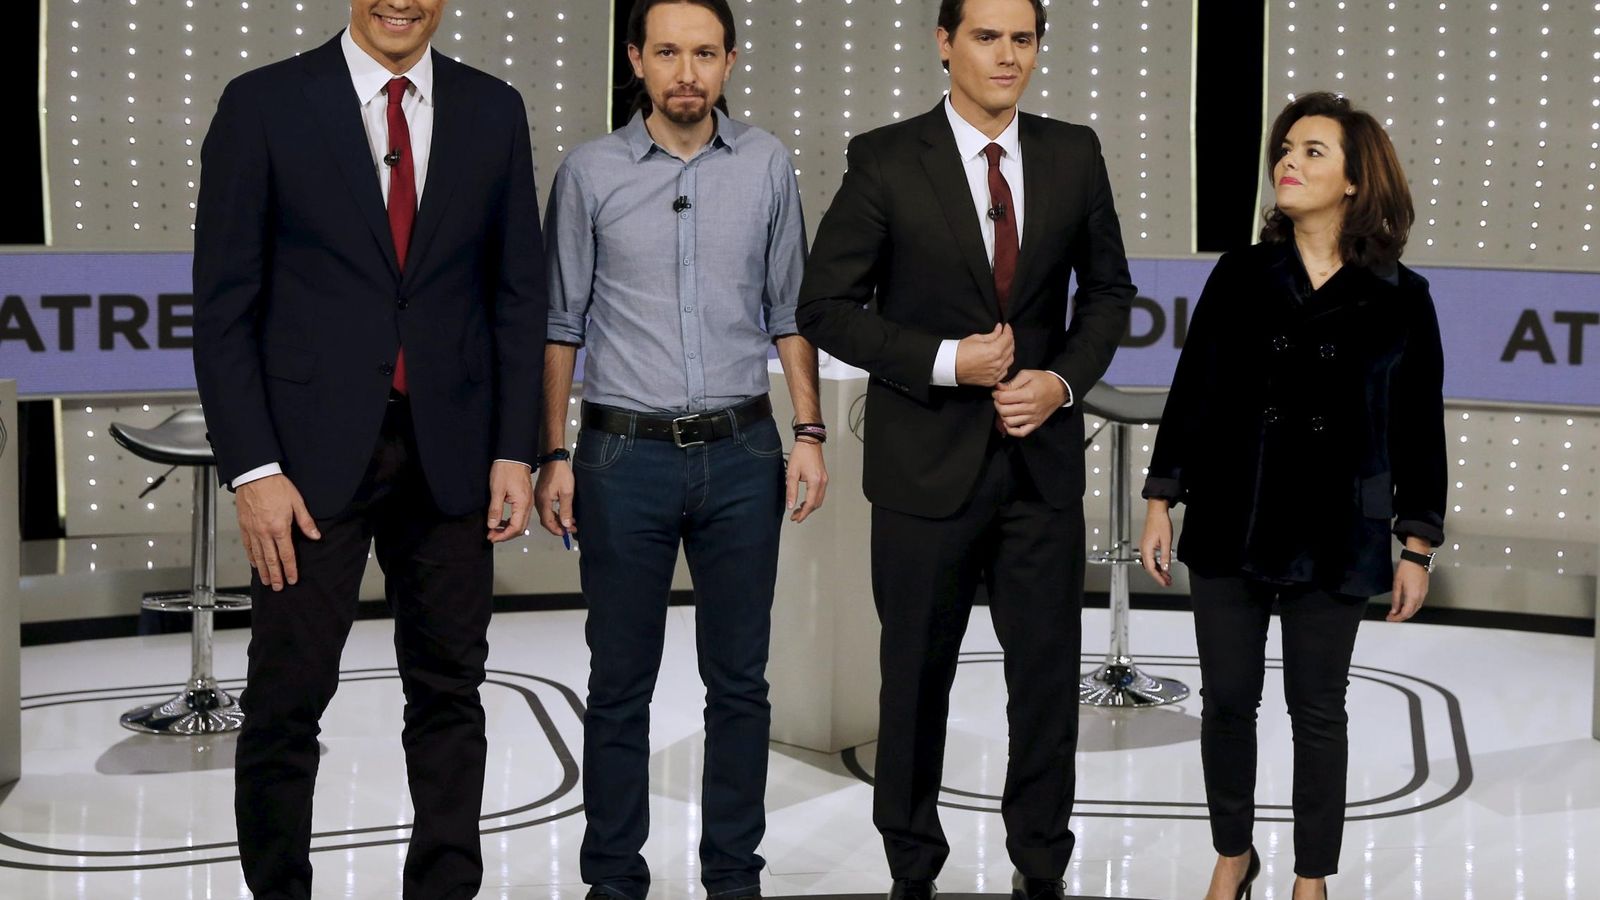 Foto: Pedro Sánchez, Pablo Iglesias, Albert Rivera y Soraya Sáenz de Santamaría, el pasado 7 de diciembre antes de su debate en Atresmedia. (Reuters)